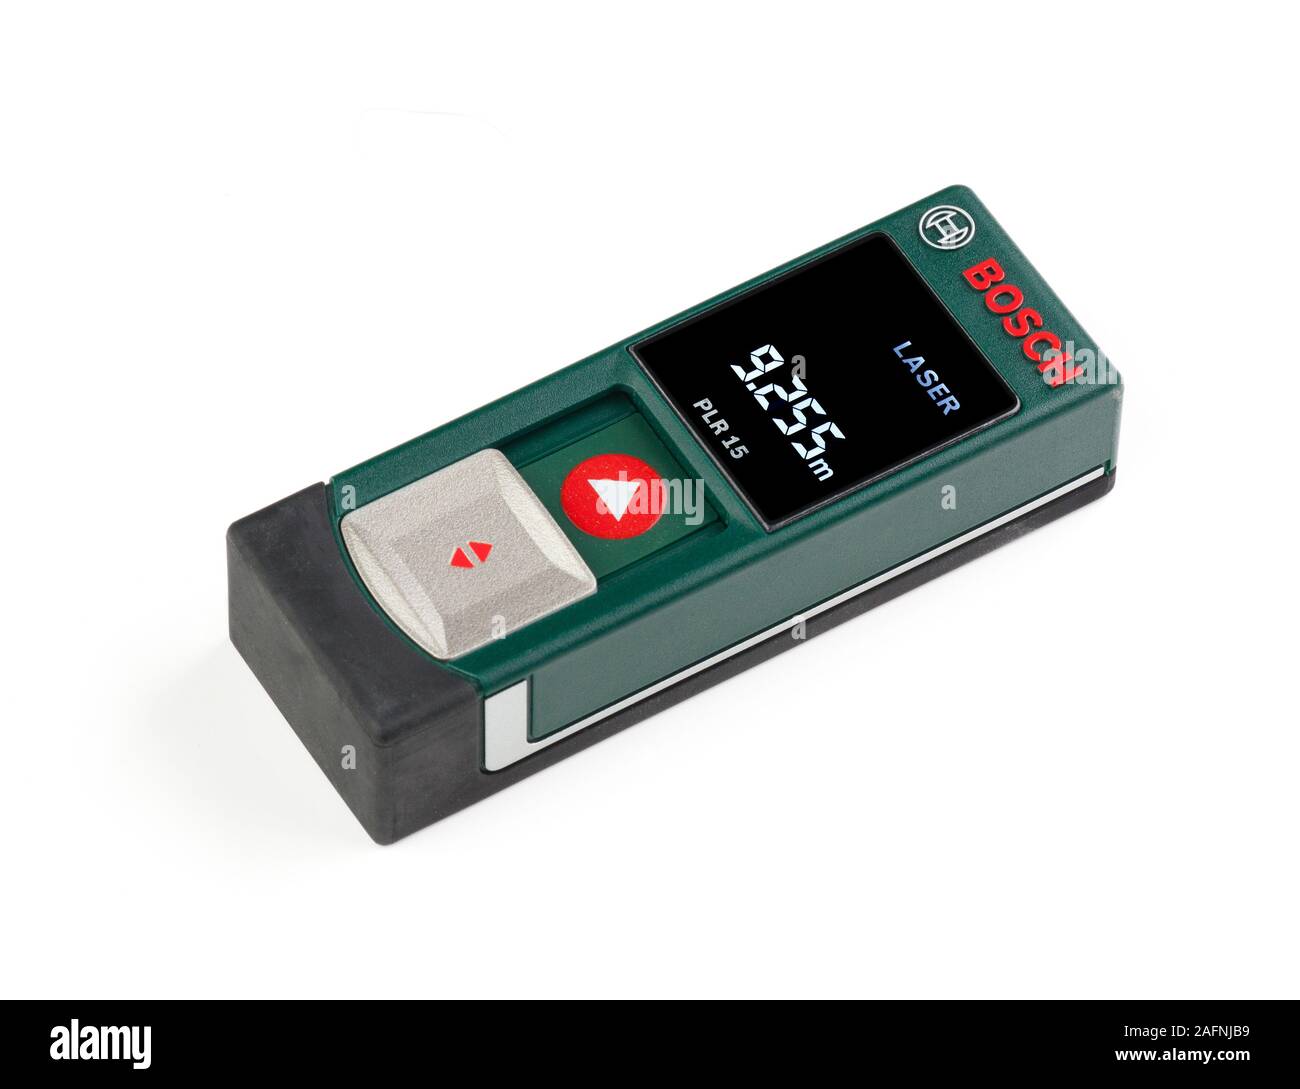 Herramienta de medición de distancia láser Bosch Foto de stock